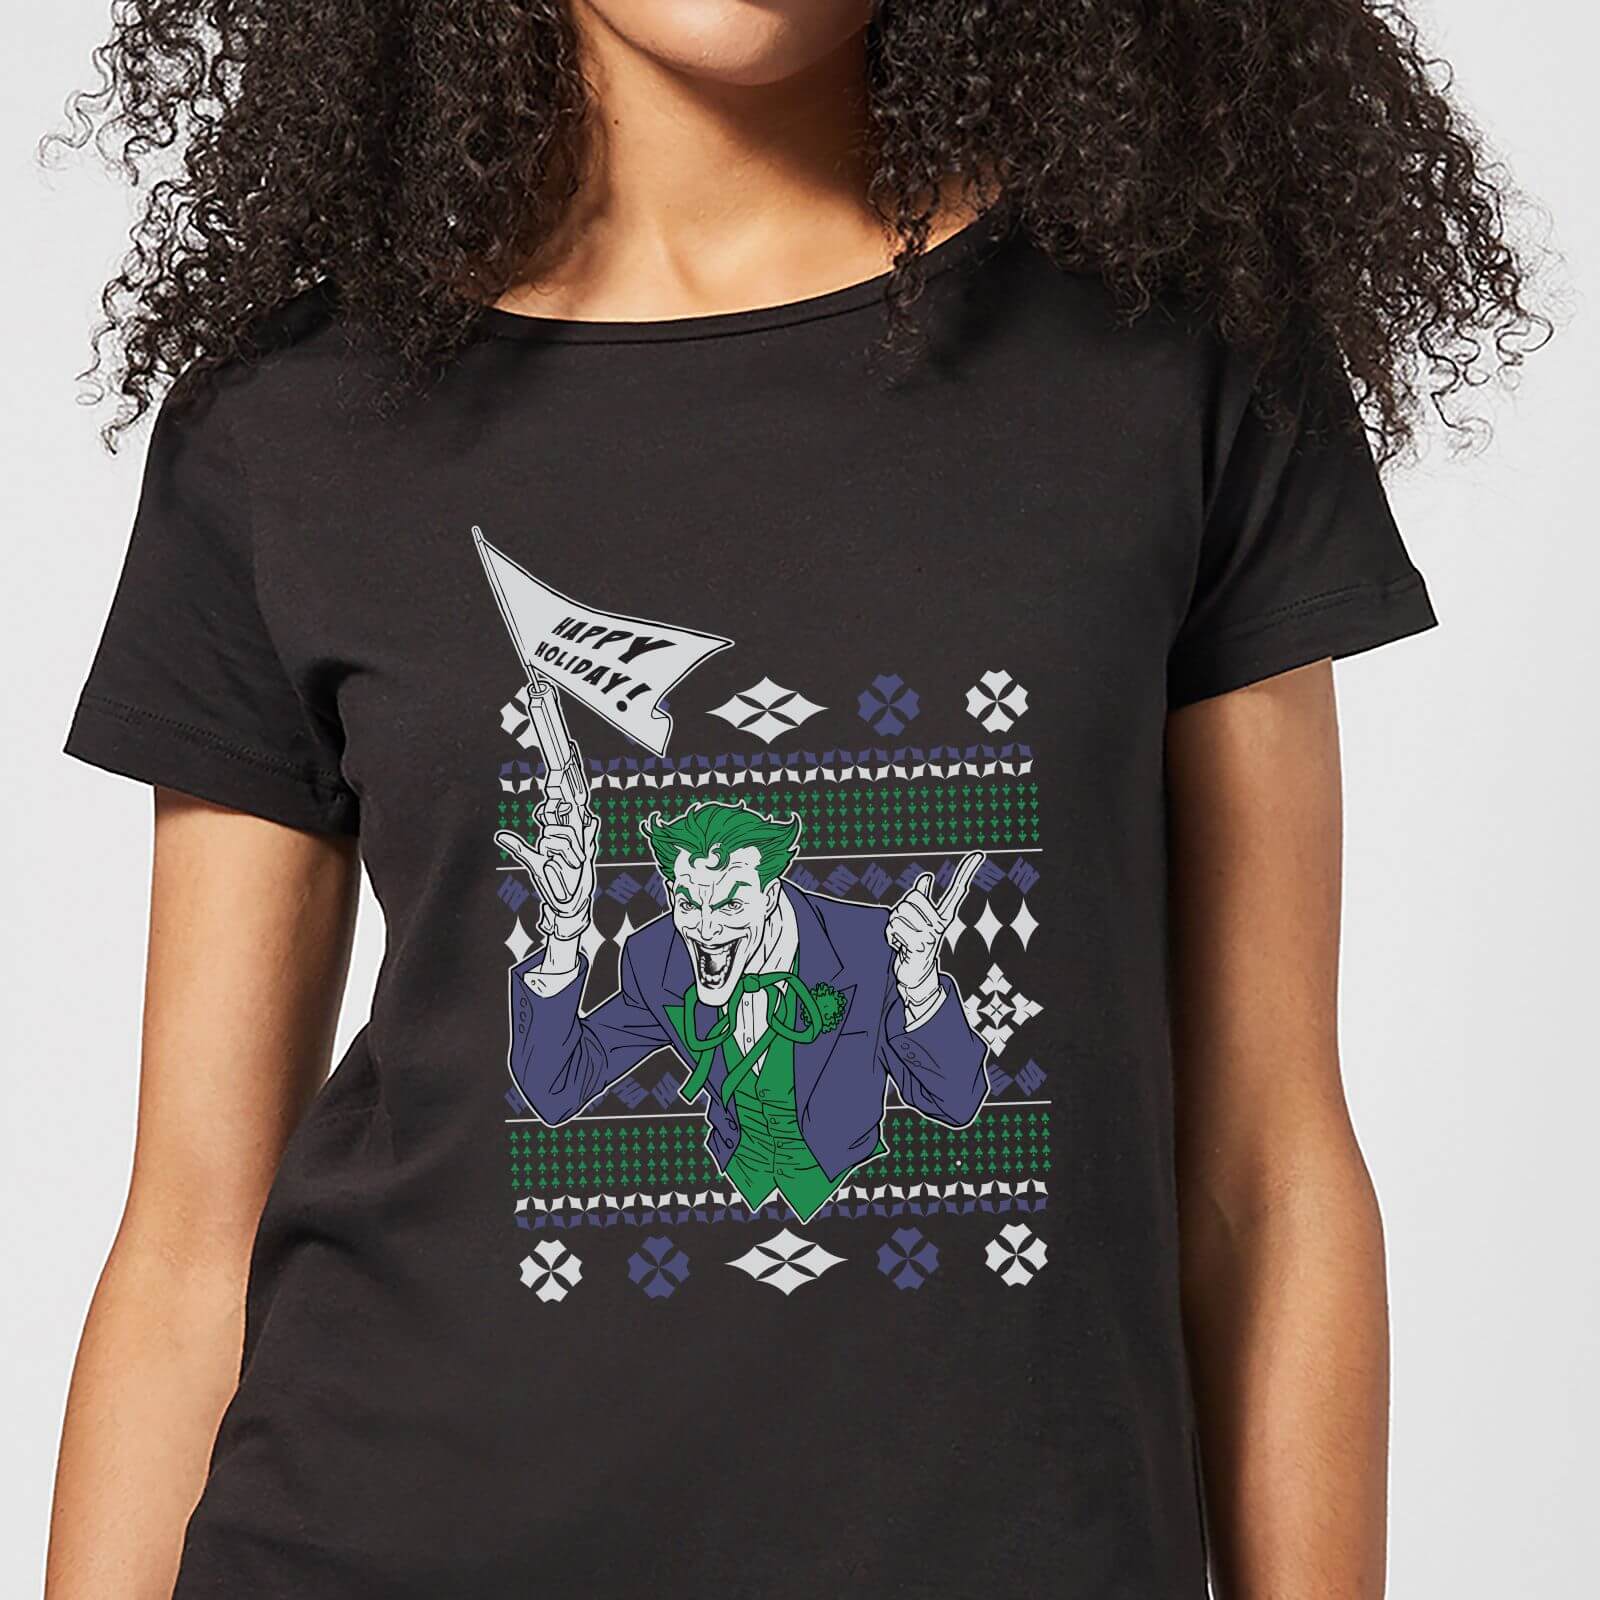 DC Joker Women's Christmas T-Shirt - Black - S - Black